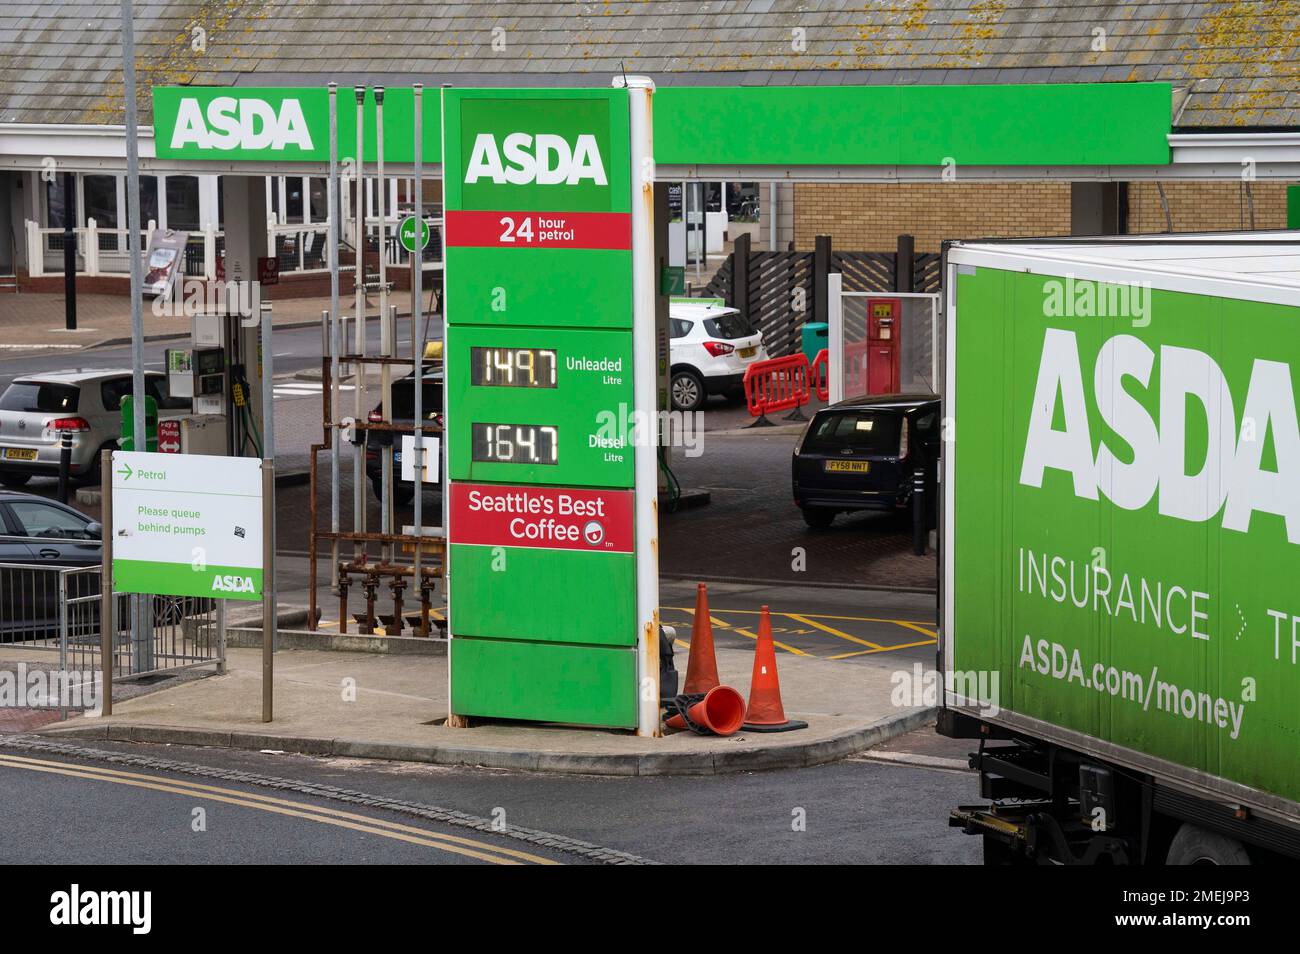 Brighton UK 24th janvier 2023 - les prix du carburant dans une station-service Asda à Brighton ont continué à baisser avec de l'essence sans plomb en dessous de £1,50 le litre : Credit Simon Dack / Alay Live News Banque D'Images